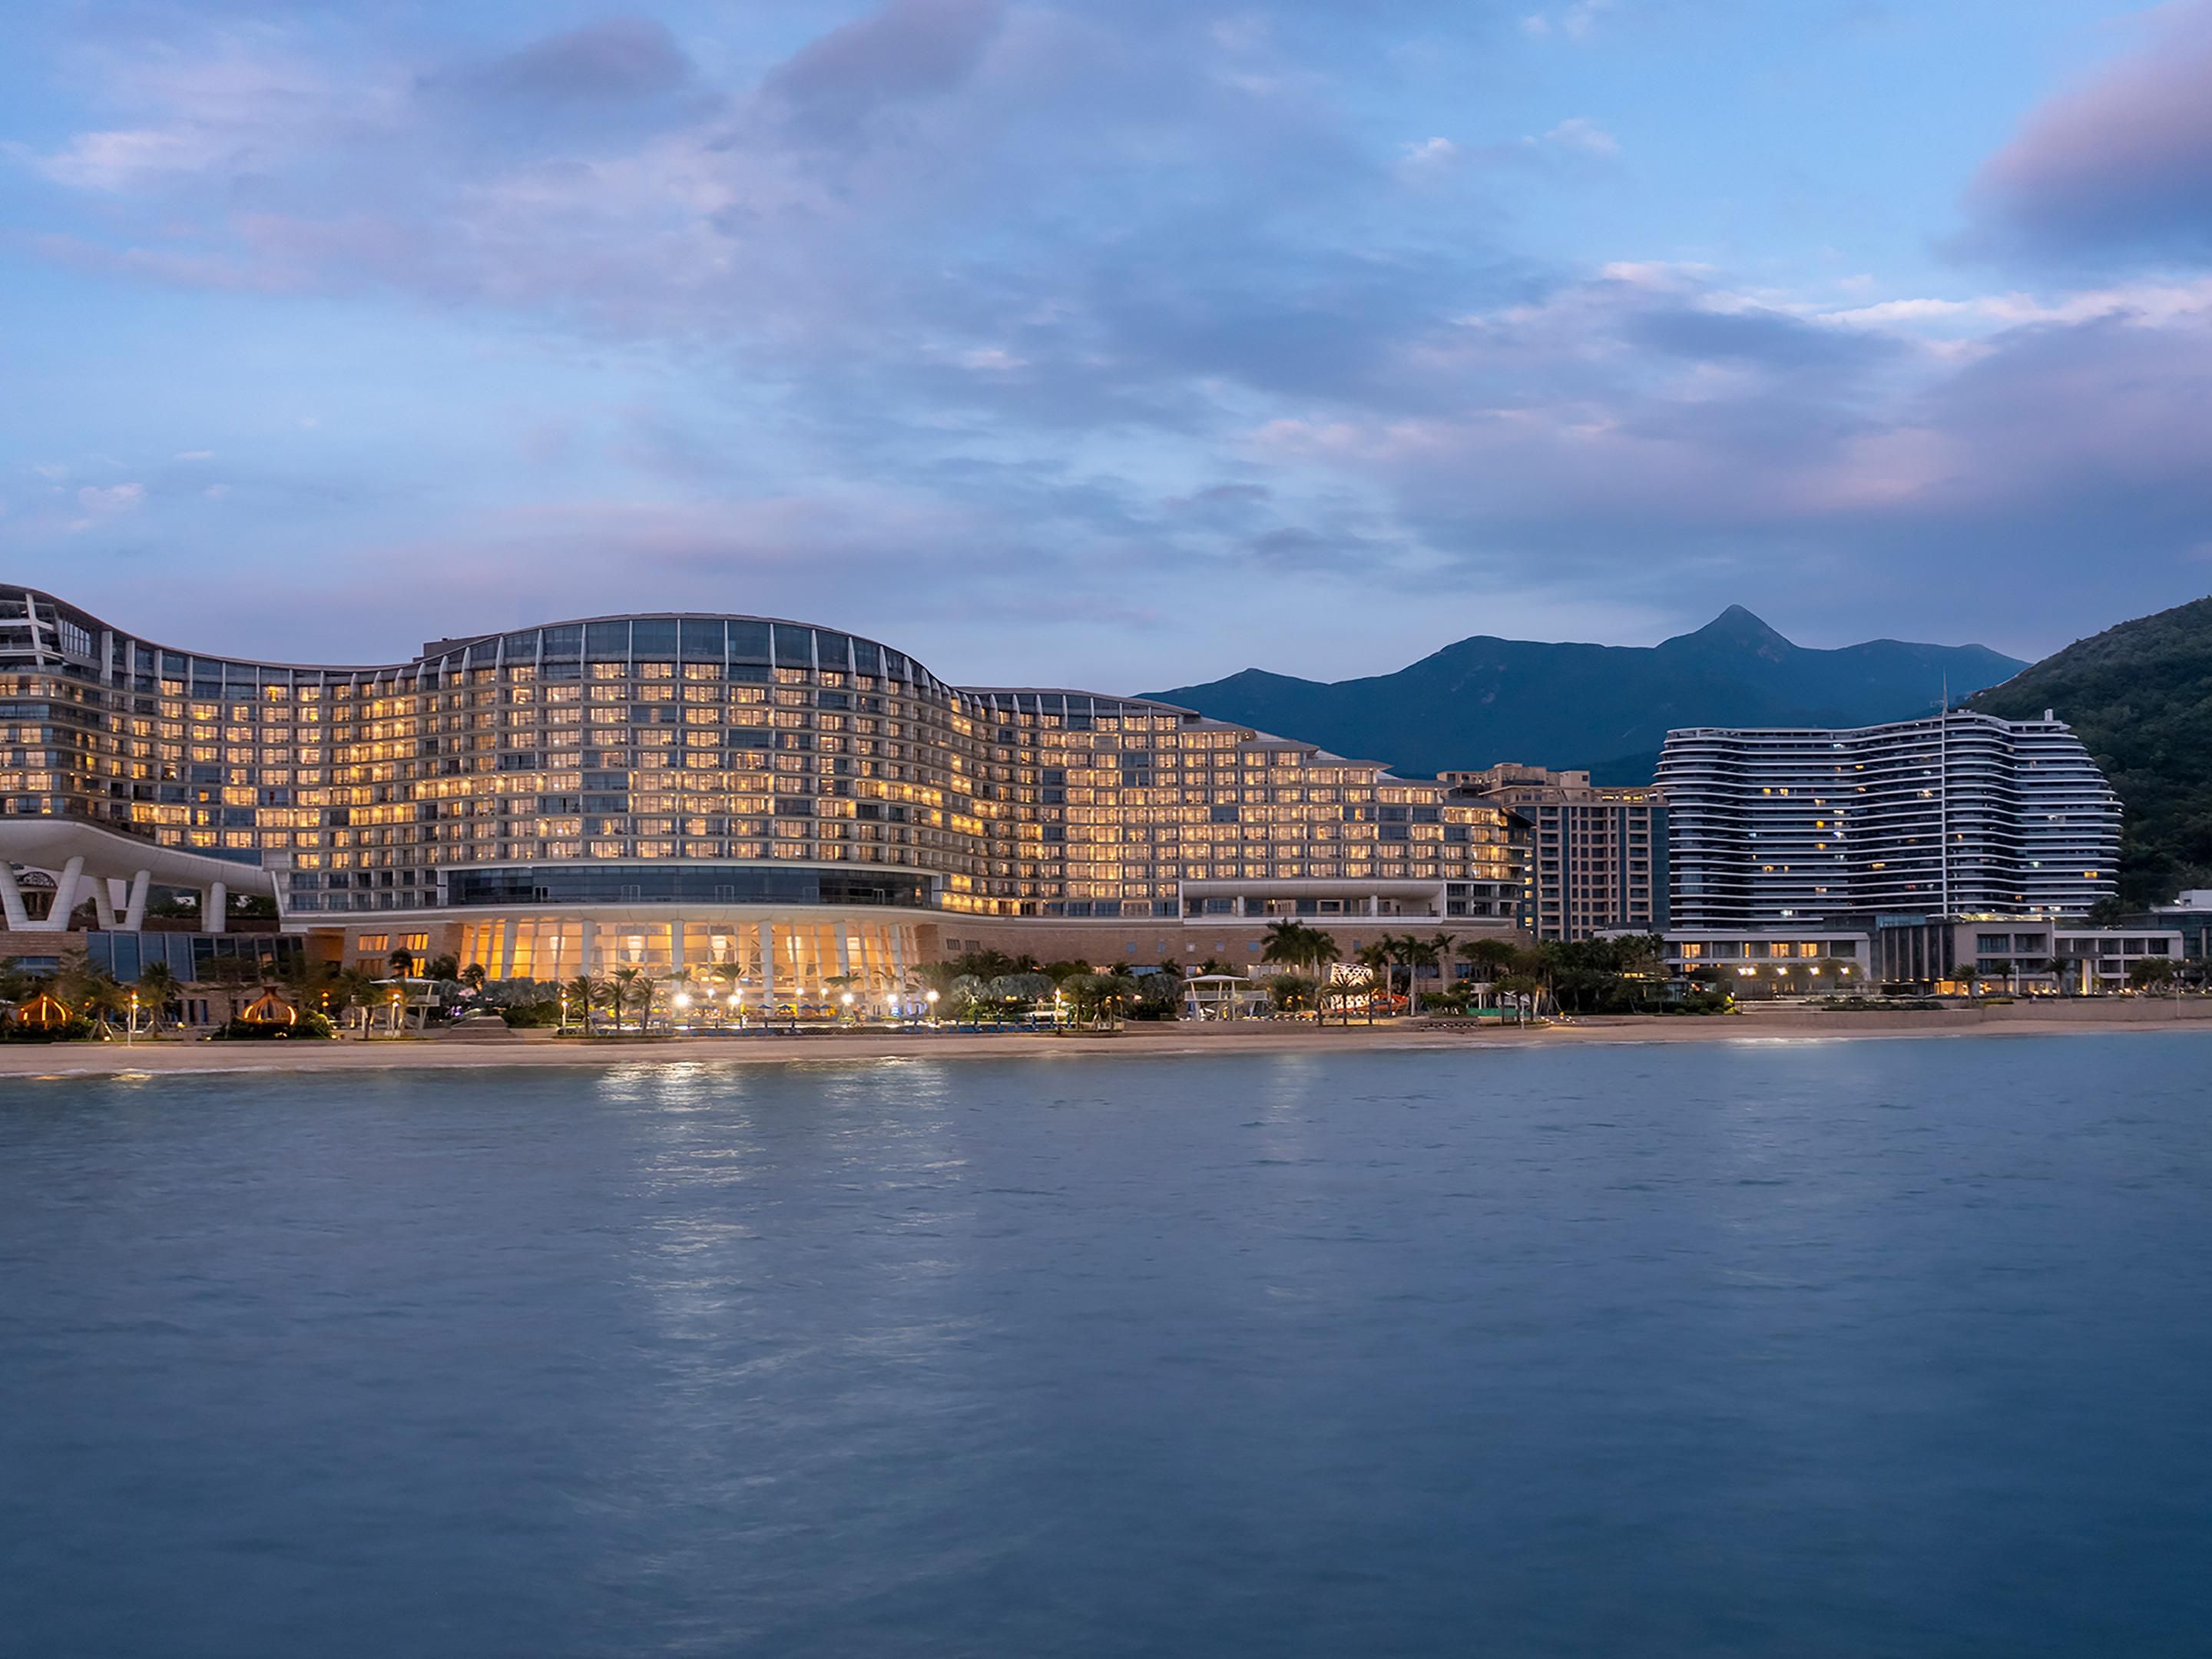 Shenzhen, nơi giao thoa giữa văn hóa Trung Quốc và nền kinh tế phát triển, được biết đến với nhiều khách sạn tuyệt vời phục vụ du khách. Hãy xem hình ảnh đầy ấn tượng của các khách sạn này và lên kế hoạch cho chuyến đi của bạn ngay hôm nay! 